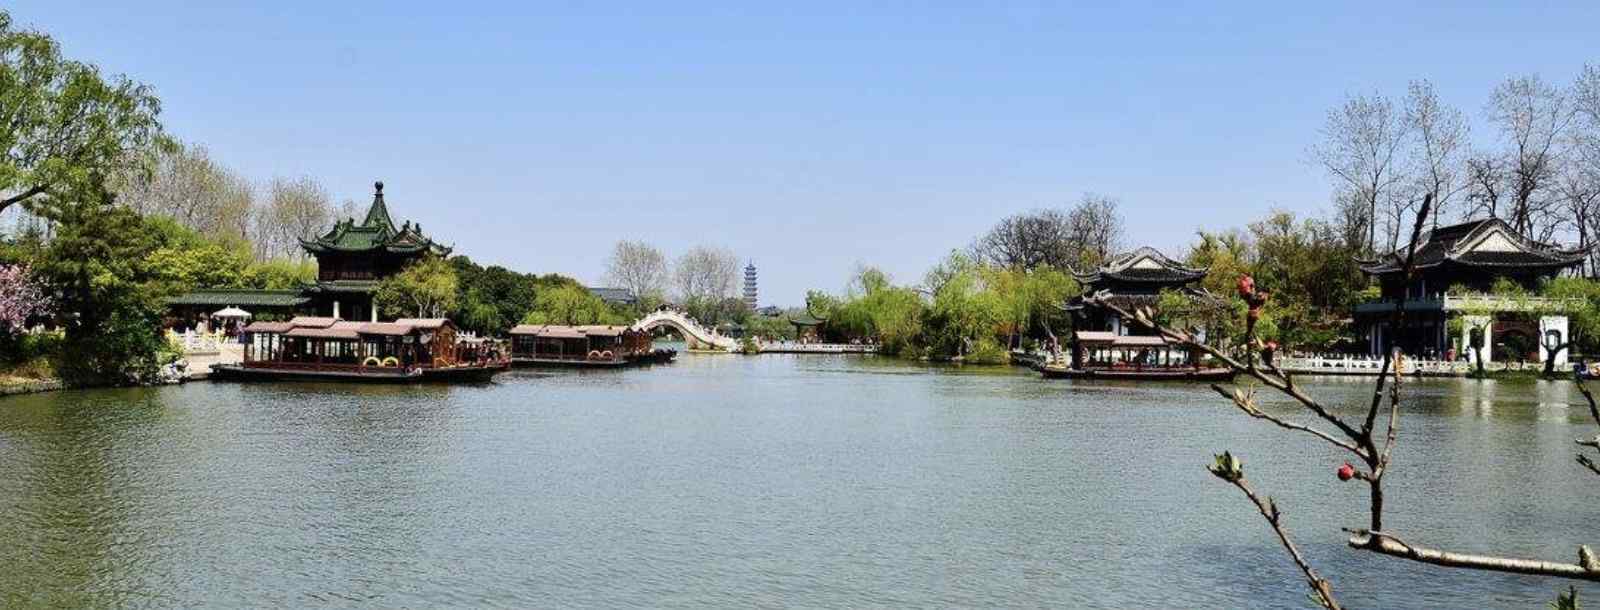 24桥是扬州着名景点什么中的一个地标景观